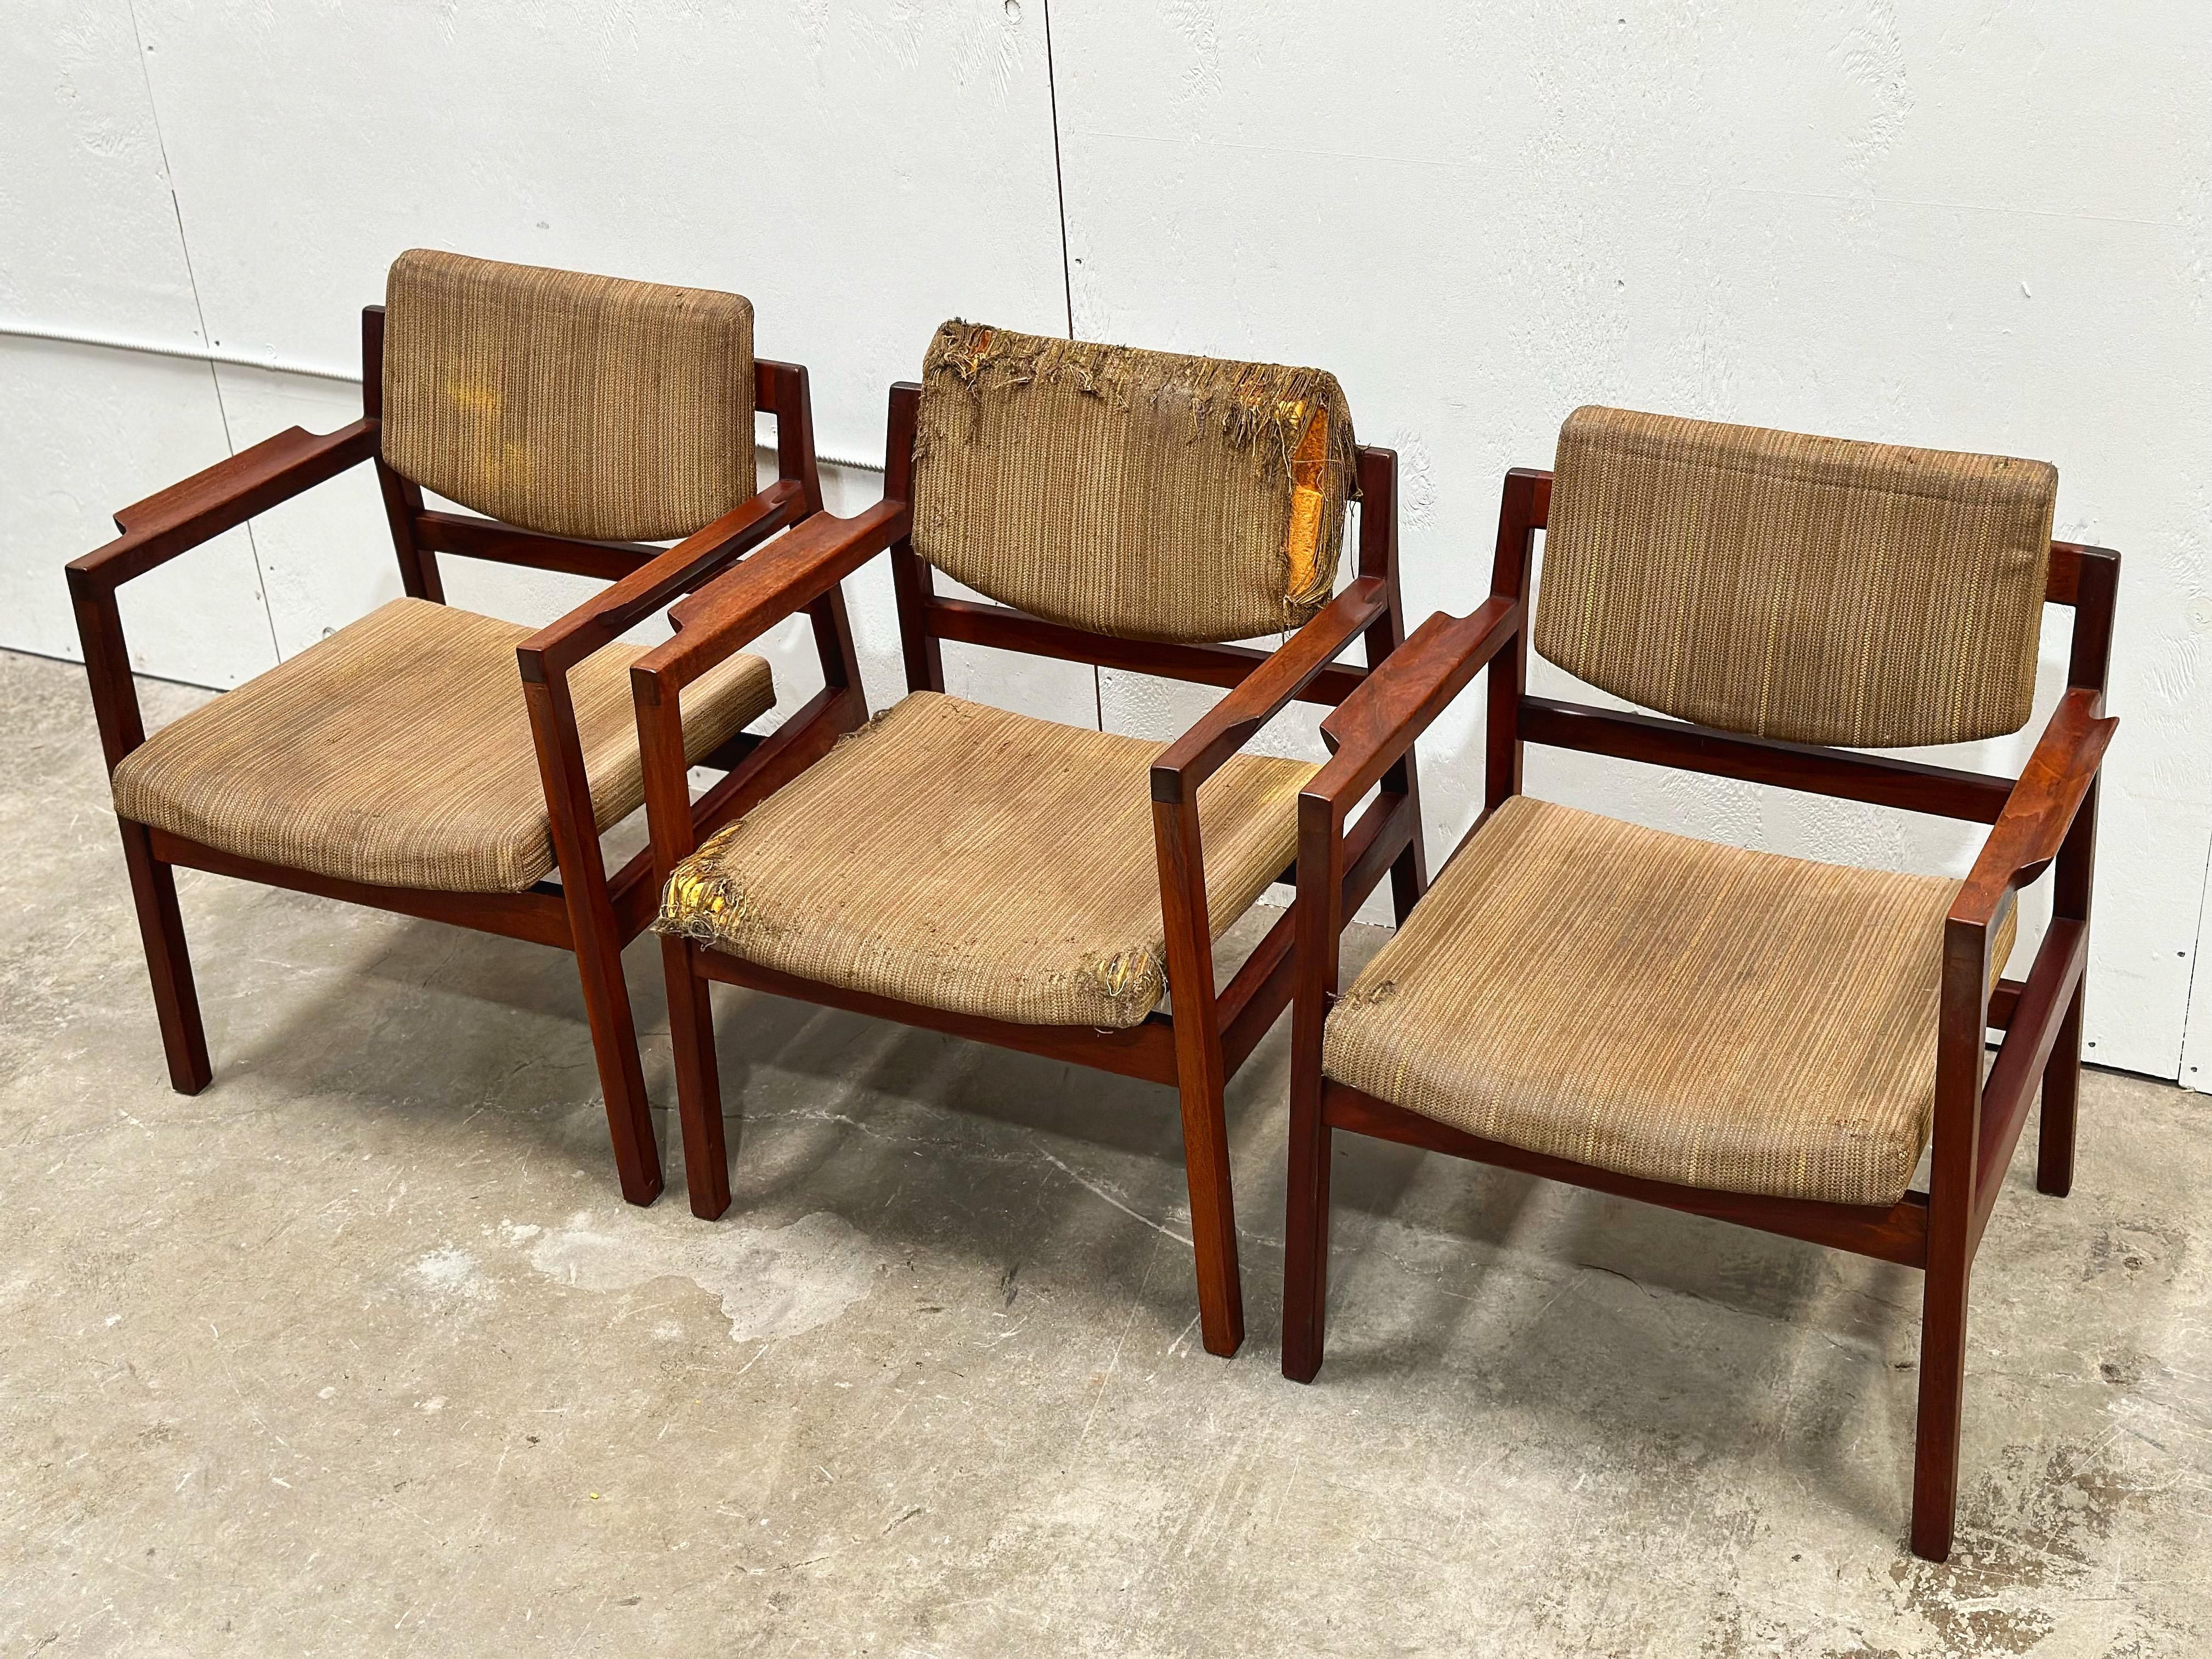 Ensemble de huit (8) fauteuils vintage du milieu du siècle moderne par Jens Risom, vers la fin des années 1950. Modèle C-170 en noyer noir américain massif avec accoudoirs évasés sculptés. Une fabrication américaine robuste et solide avec un design